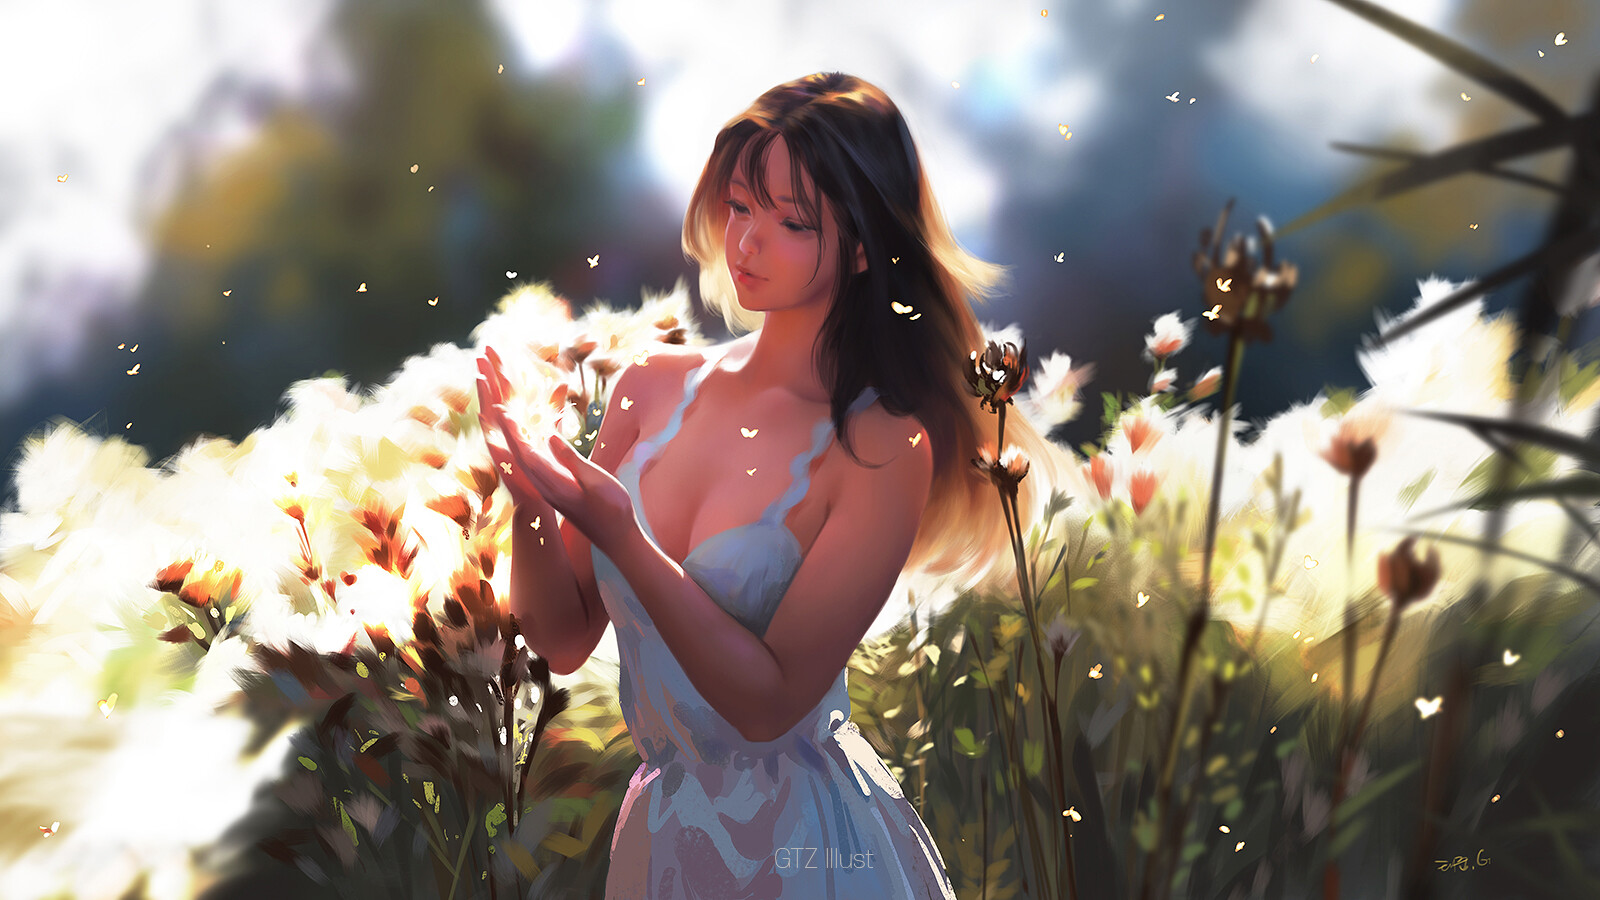 Taejune Kim Digital Art Women Brunette Nature Garden White Dress Long Hair Flowers Anime Girls Anime 1600x900